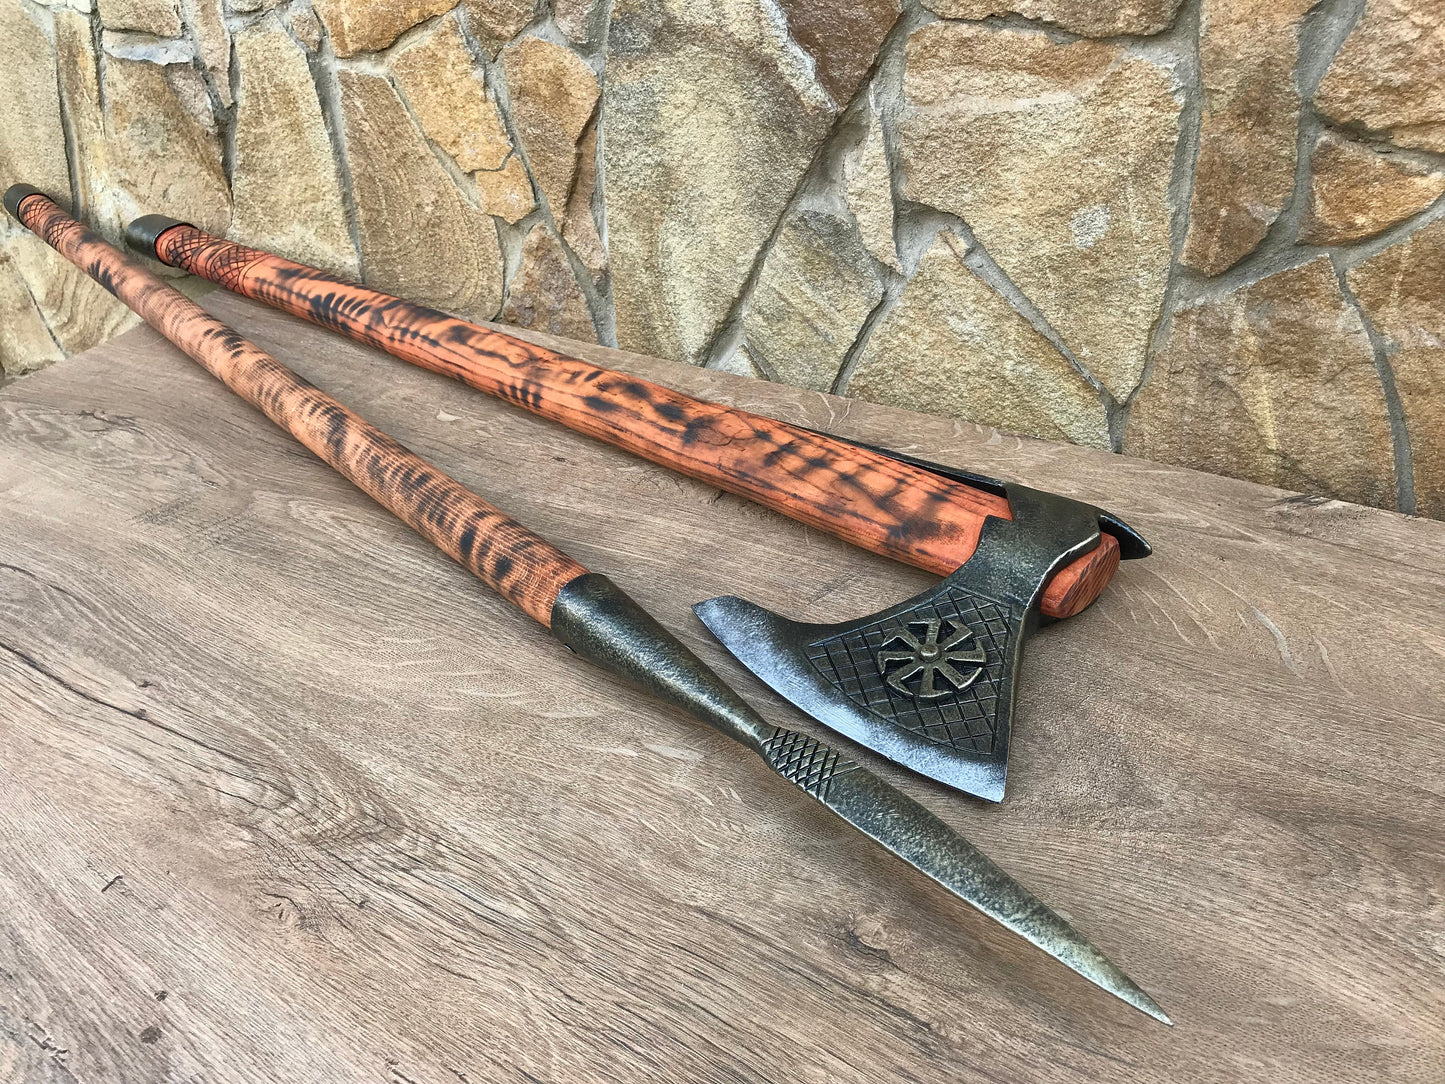 Viking axe, viking spear, viking weapon, medieval decor, viking battle axe, viking wall decor, viking shield, viking sword, viking artifact